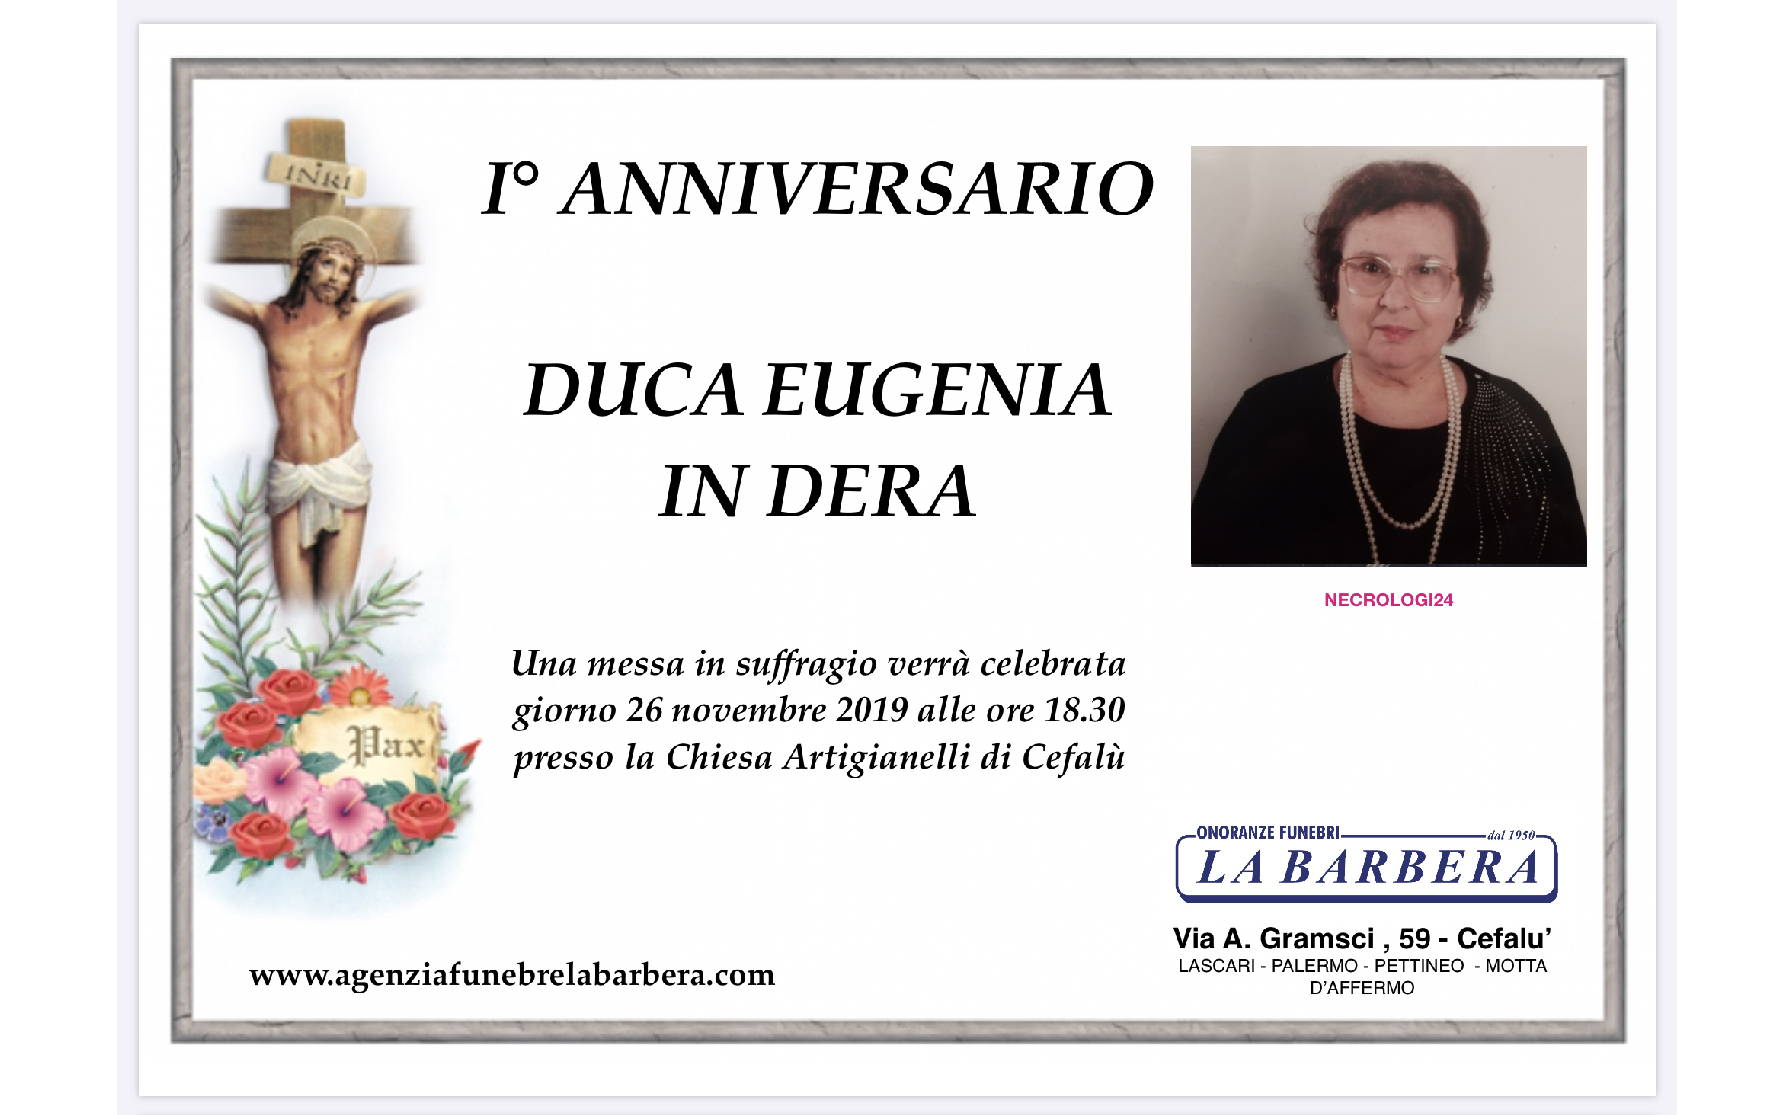 Eugenia Duca